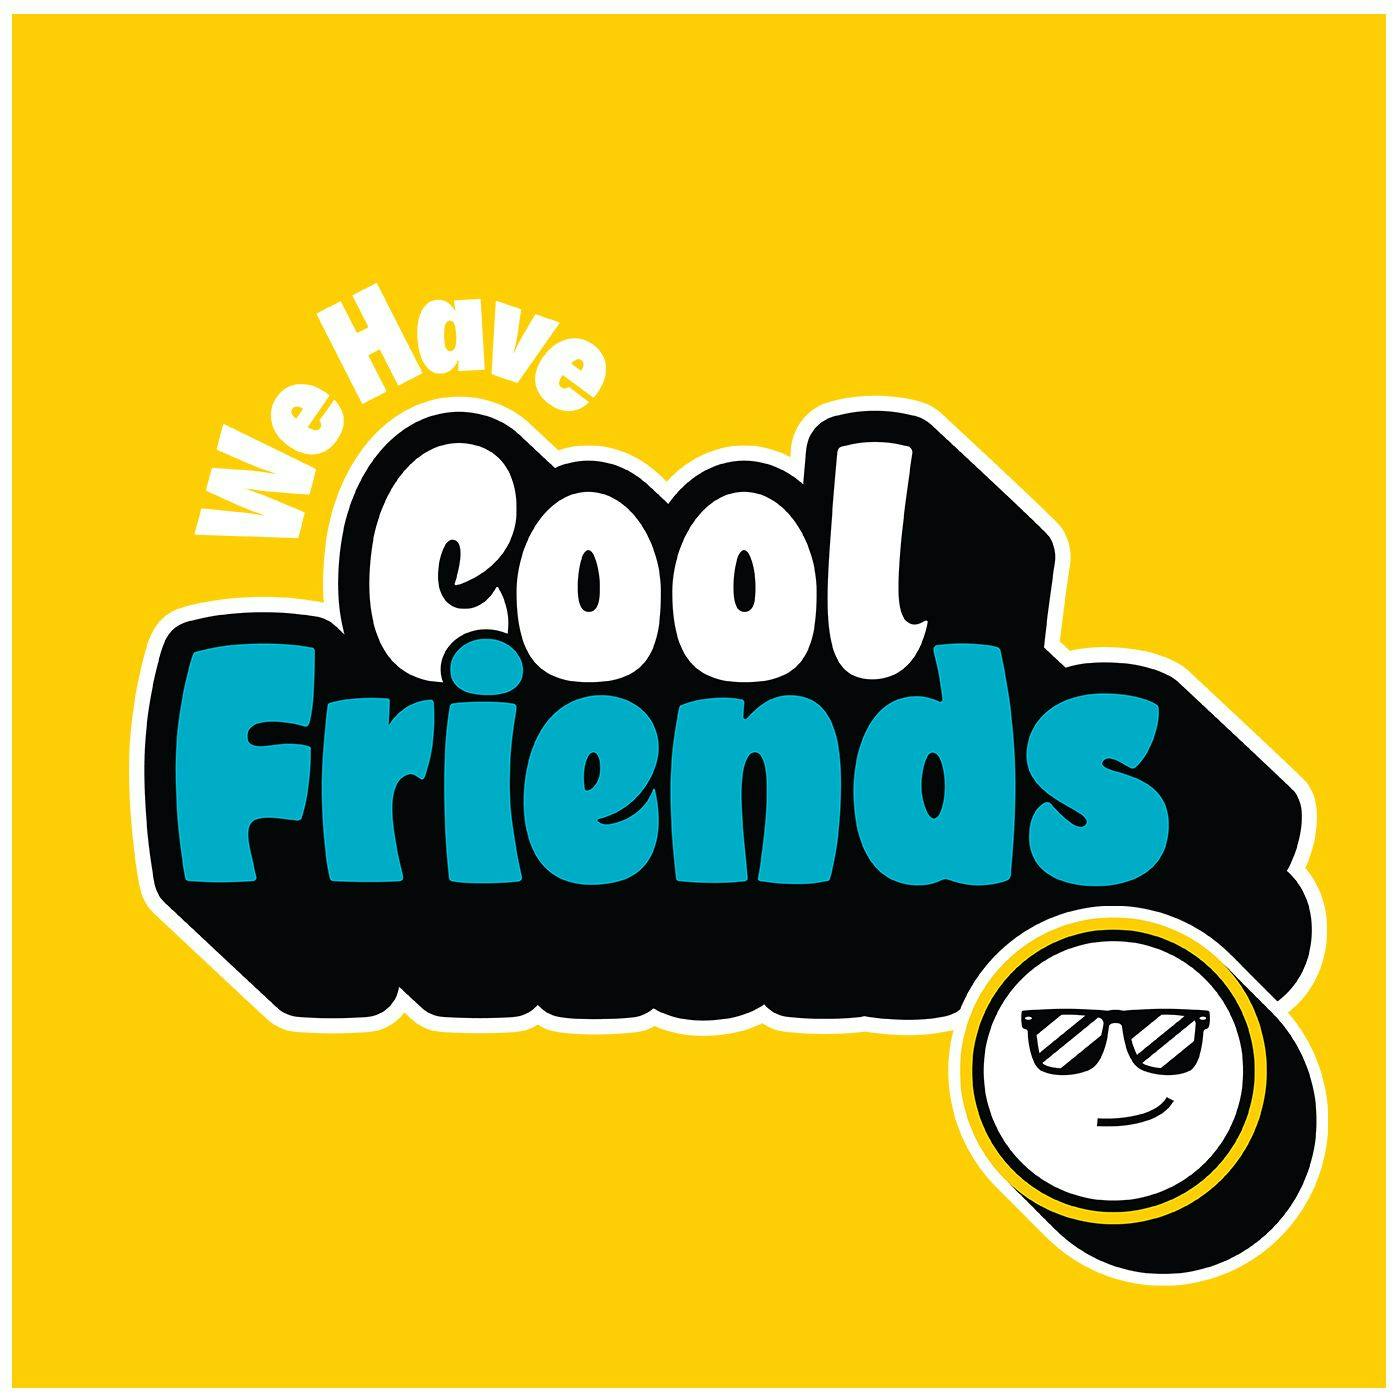 We Have Cool Friends - Devon Sawa